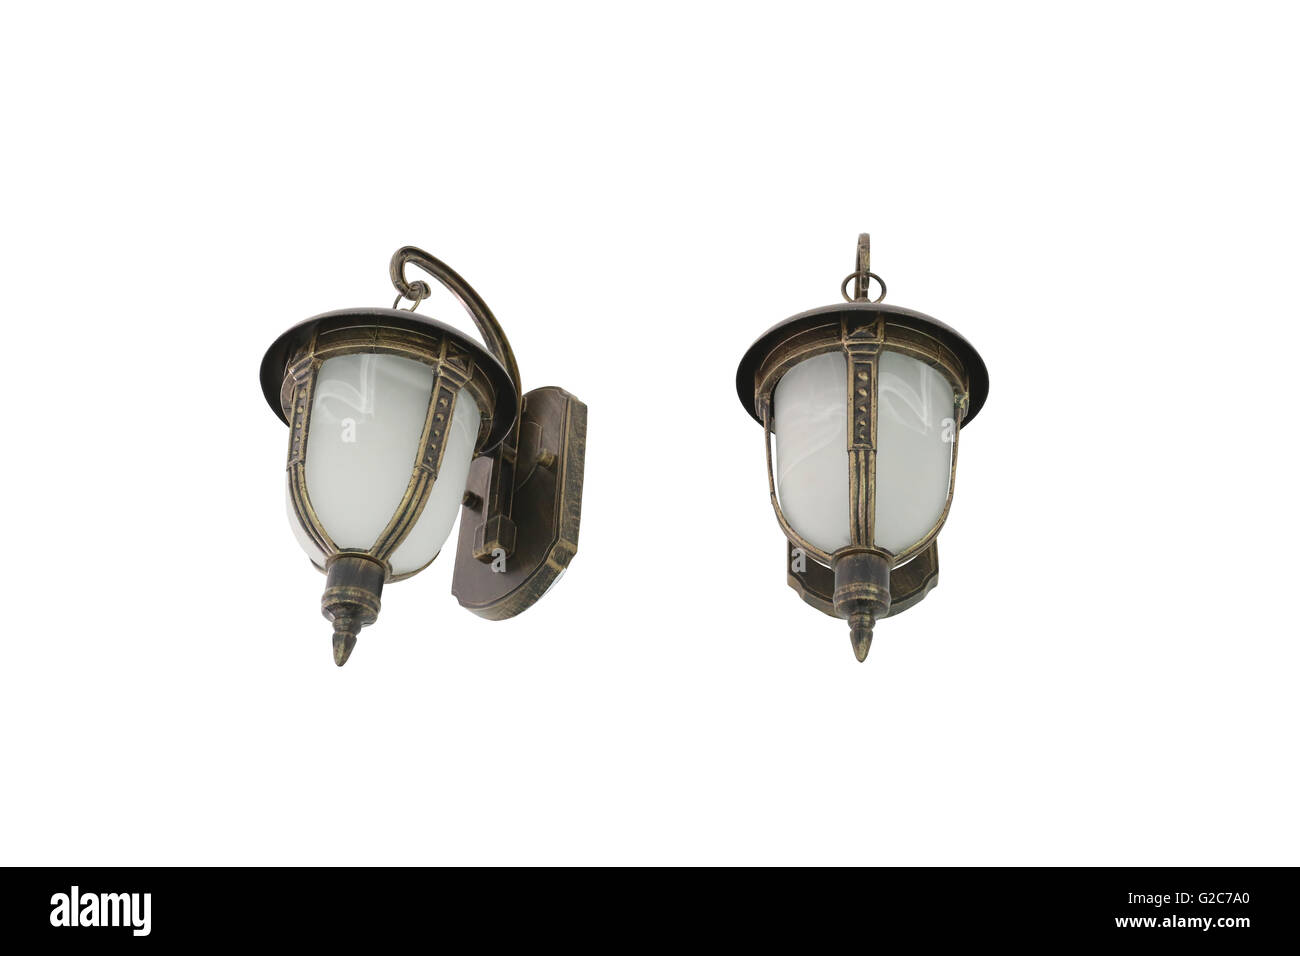 Lampes de style antique vintage isolé sur fond blanc et ont trajets de découpage. Banque D'Images